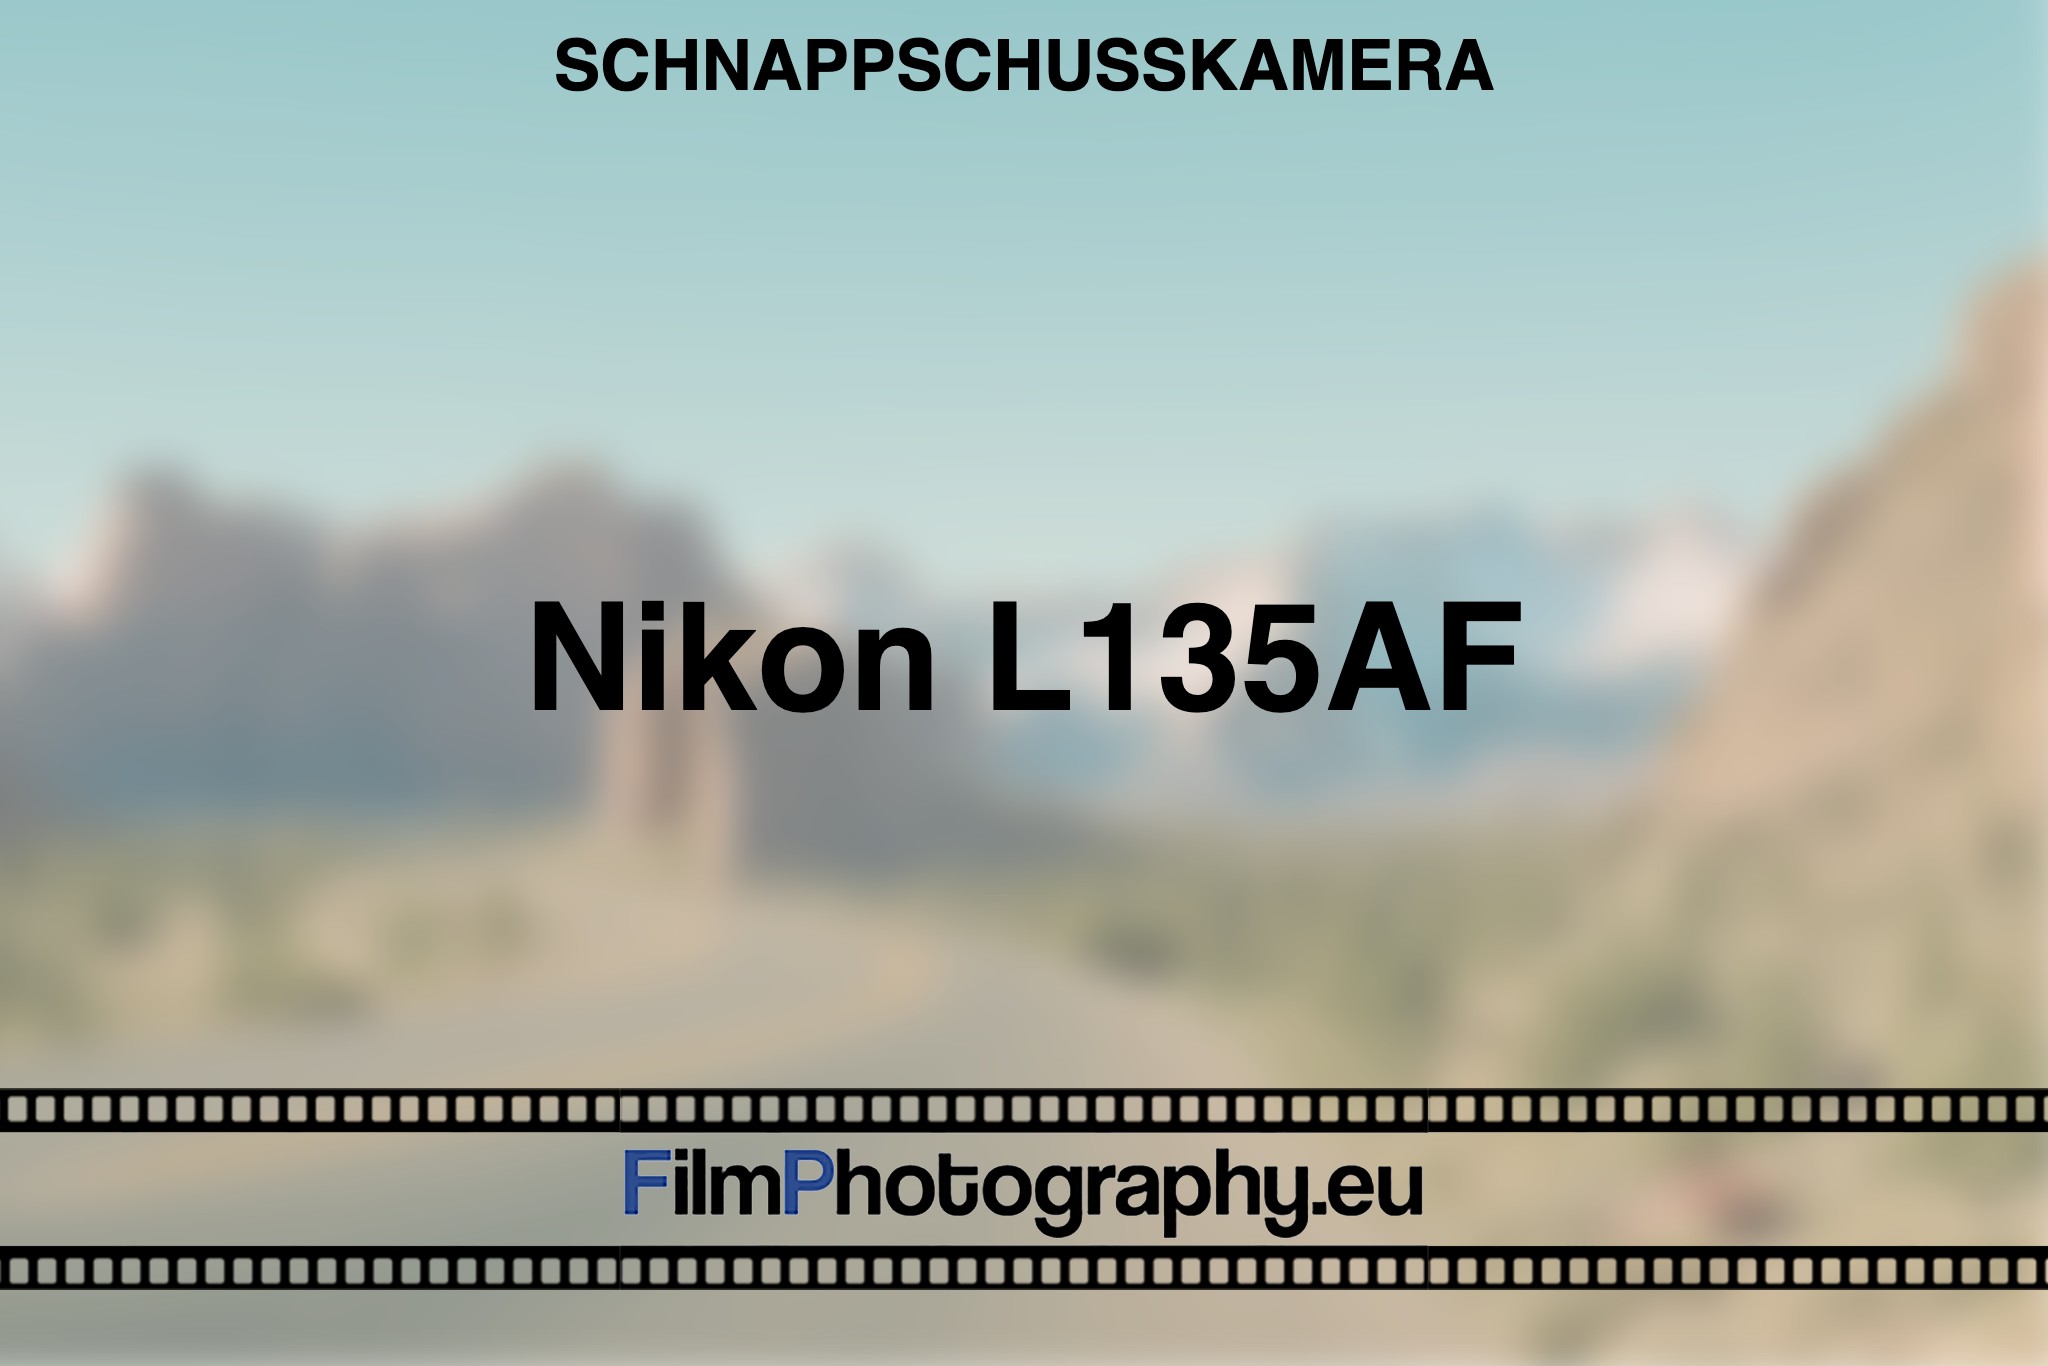 nikon-l135af-schnappschusskamera-bnv